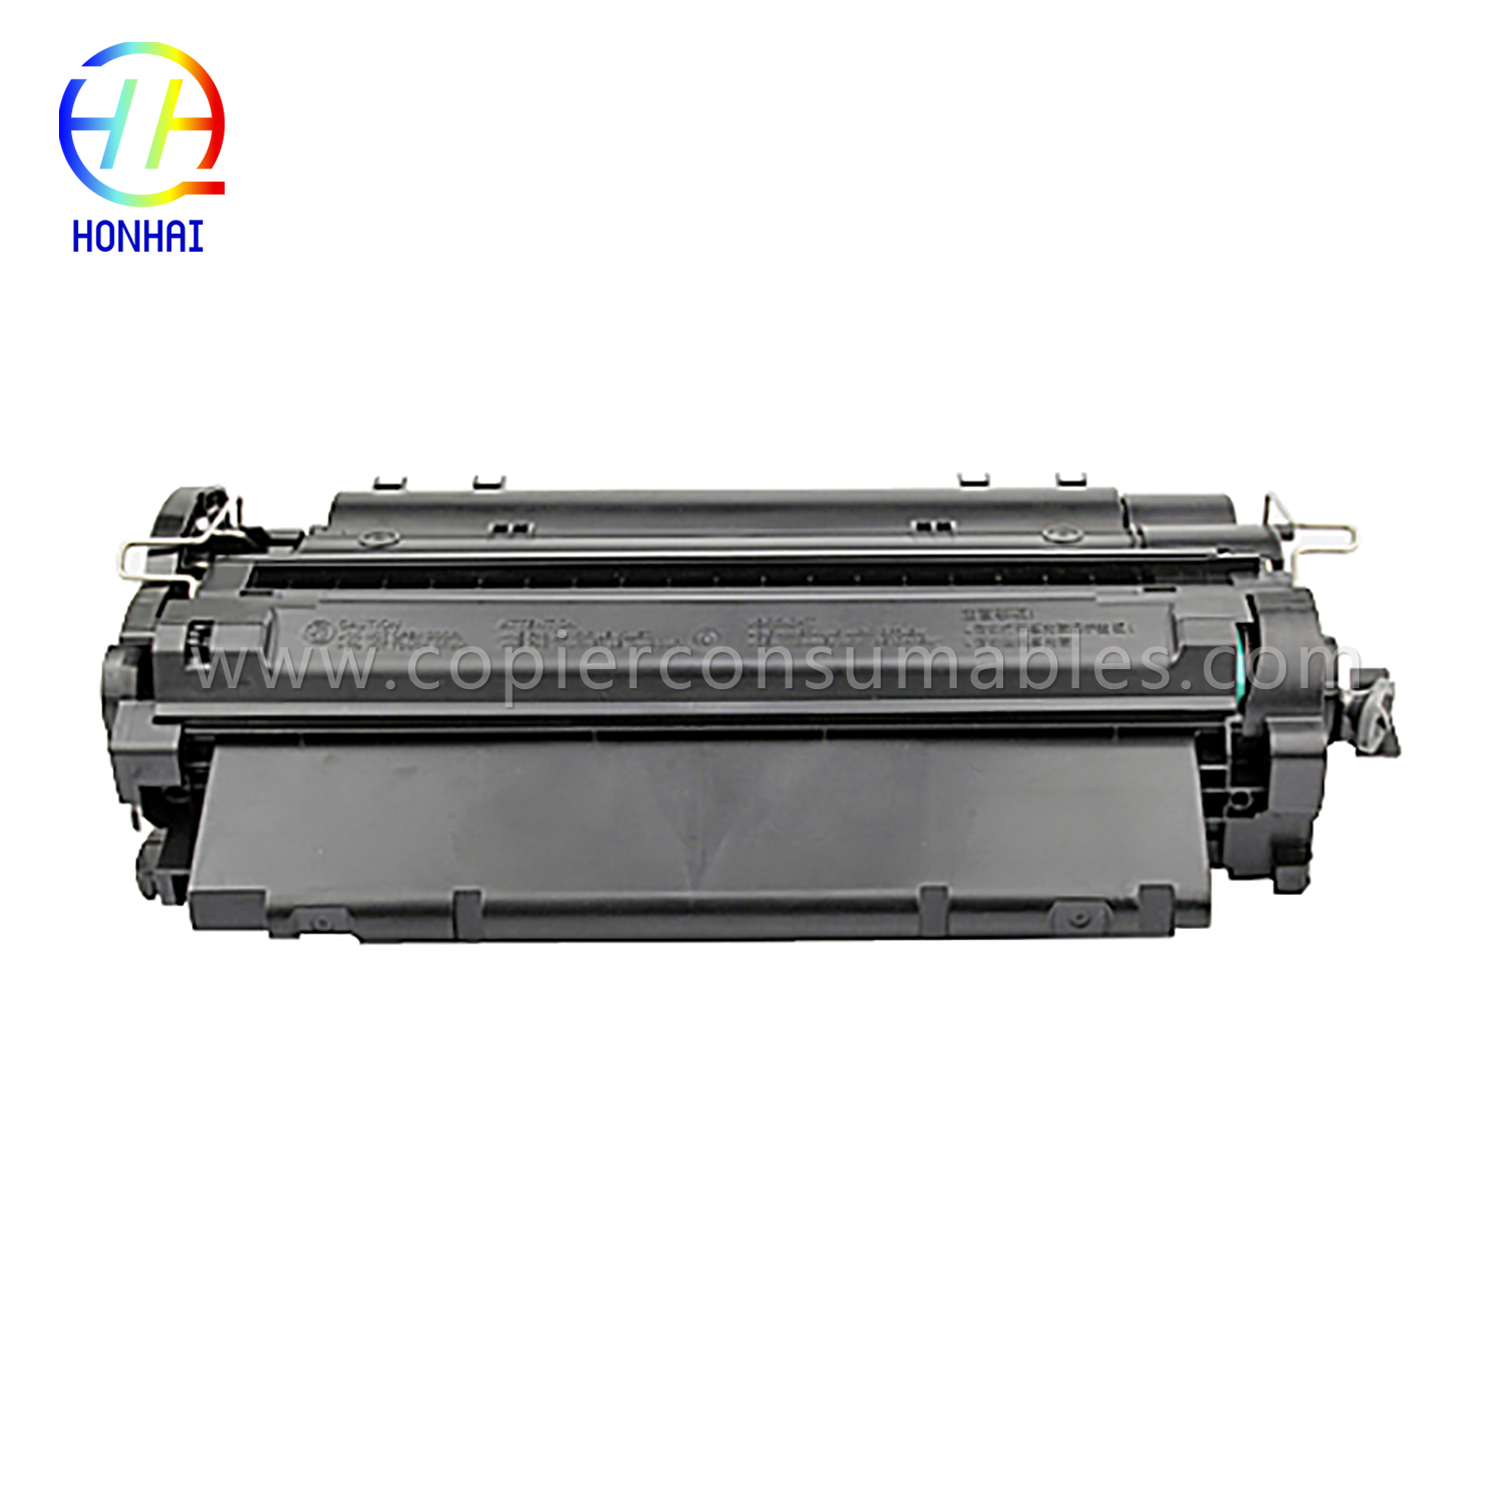 रङ टोनर कारतूस HP LaserJet LaserJet Pro MFP M521dn Enterprise P3015 (CE255X) -1 (2) 拷贝